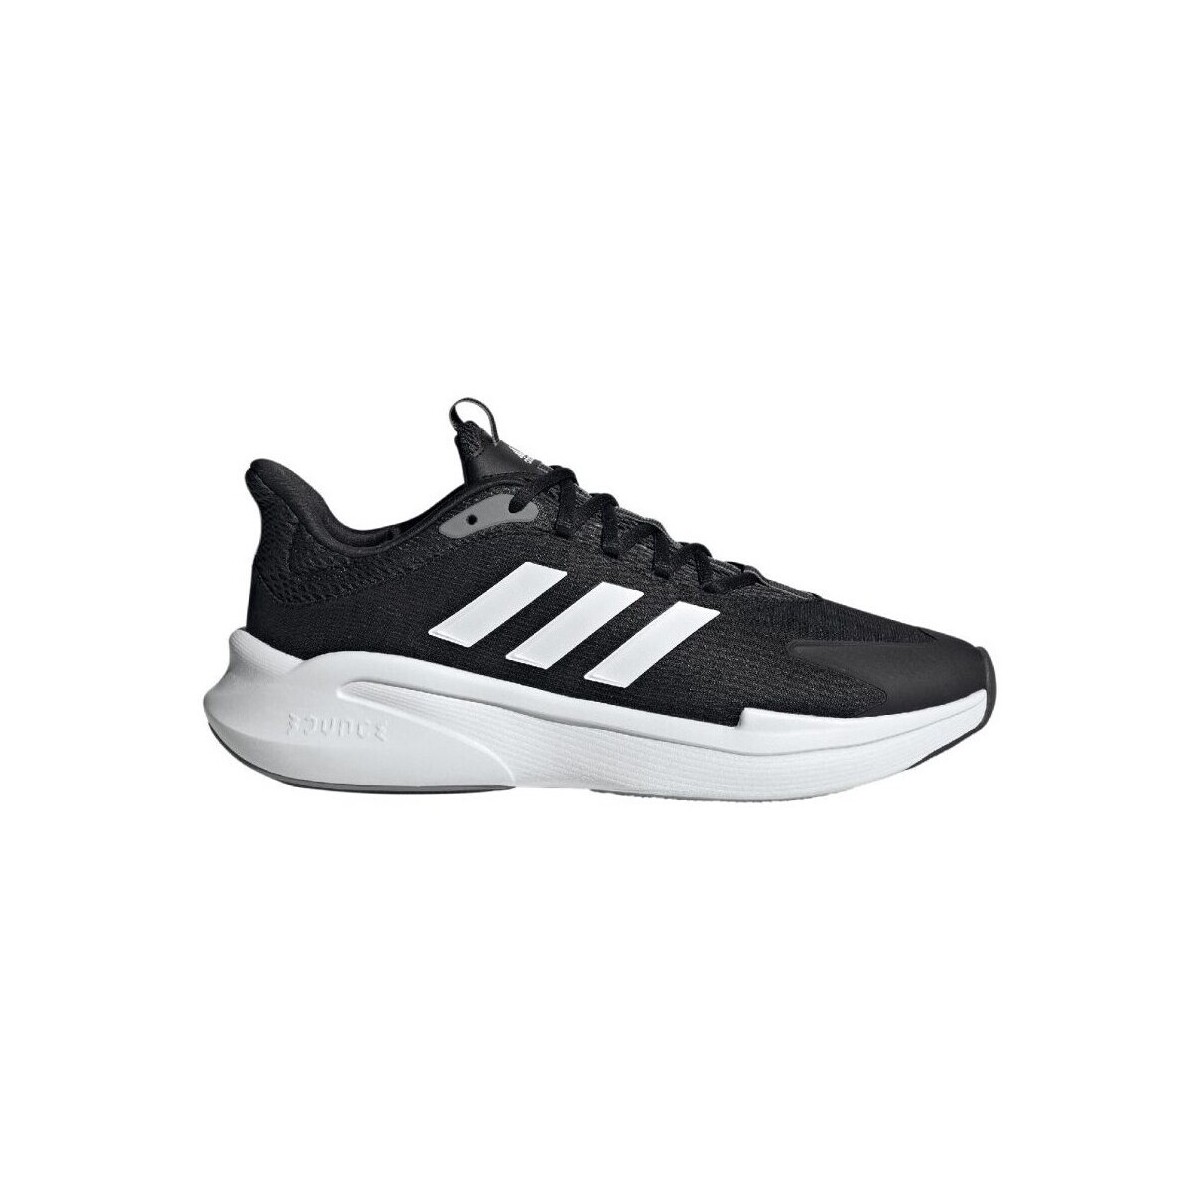 Adidas Alphaedge Black